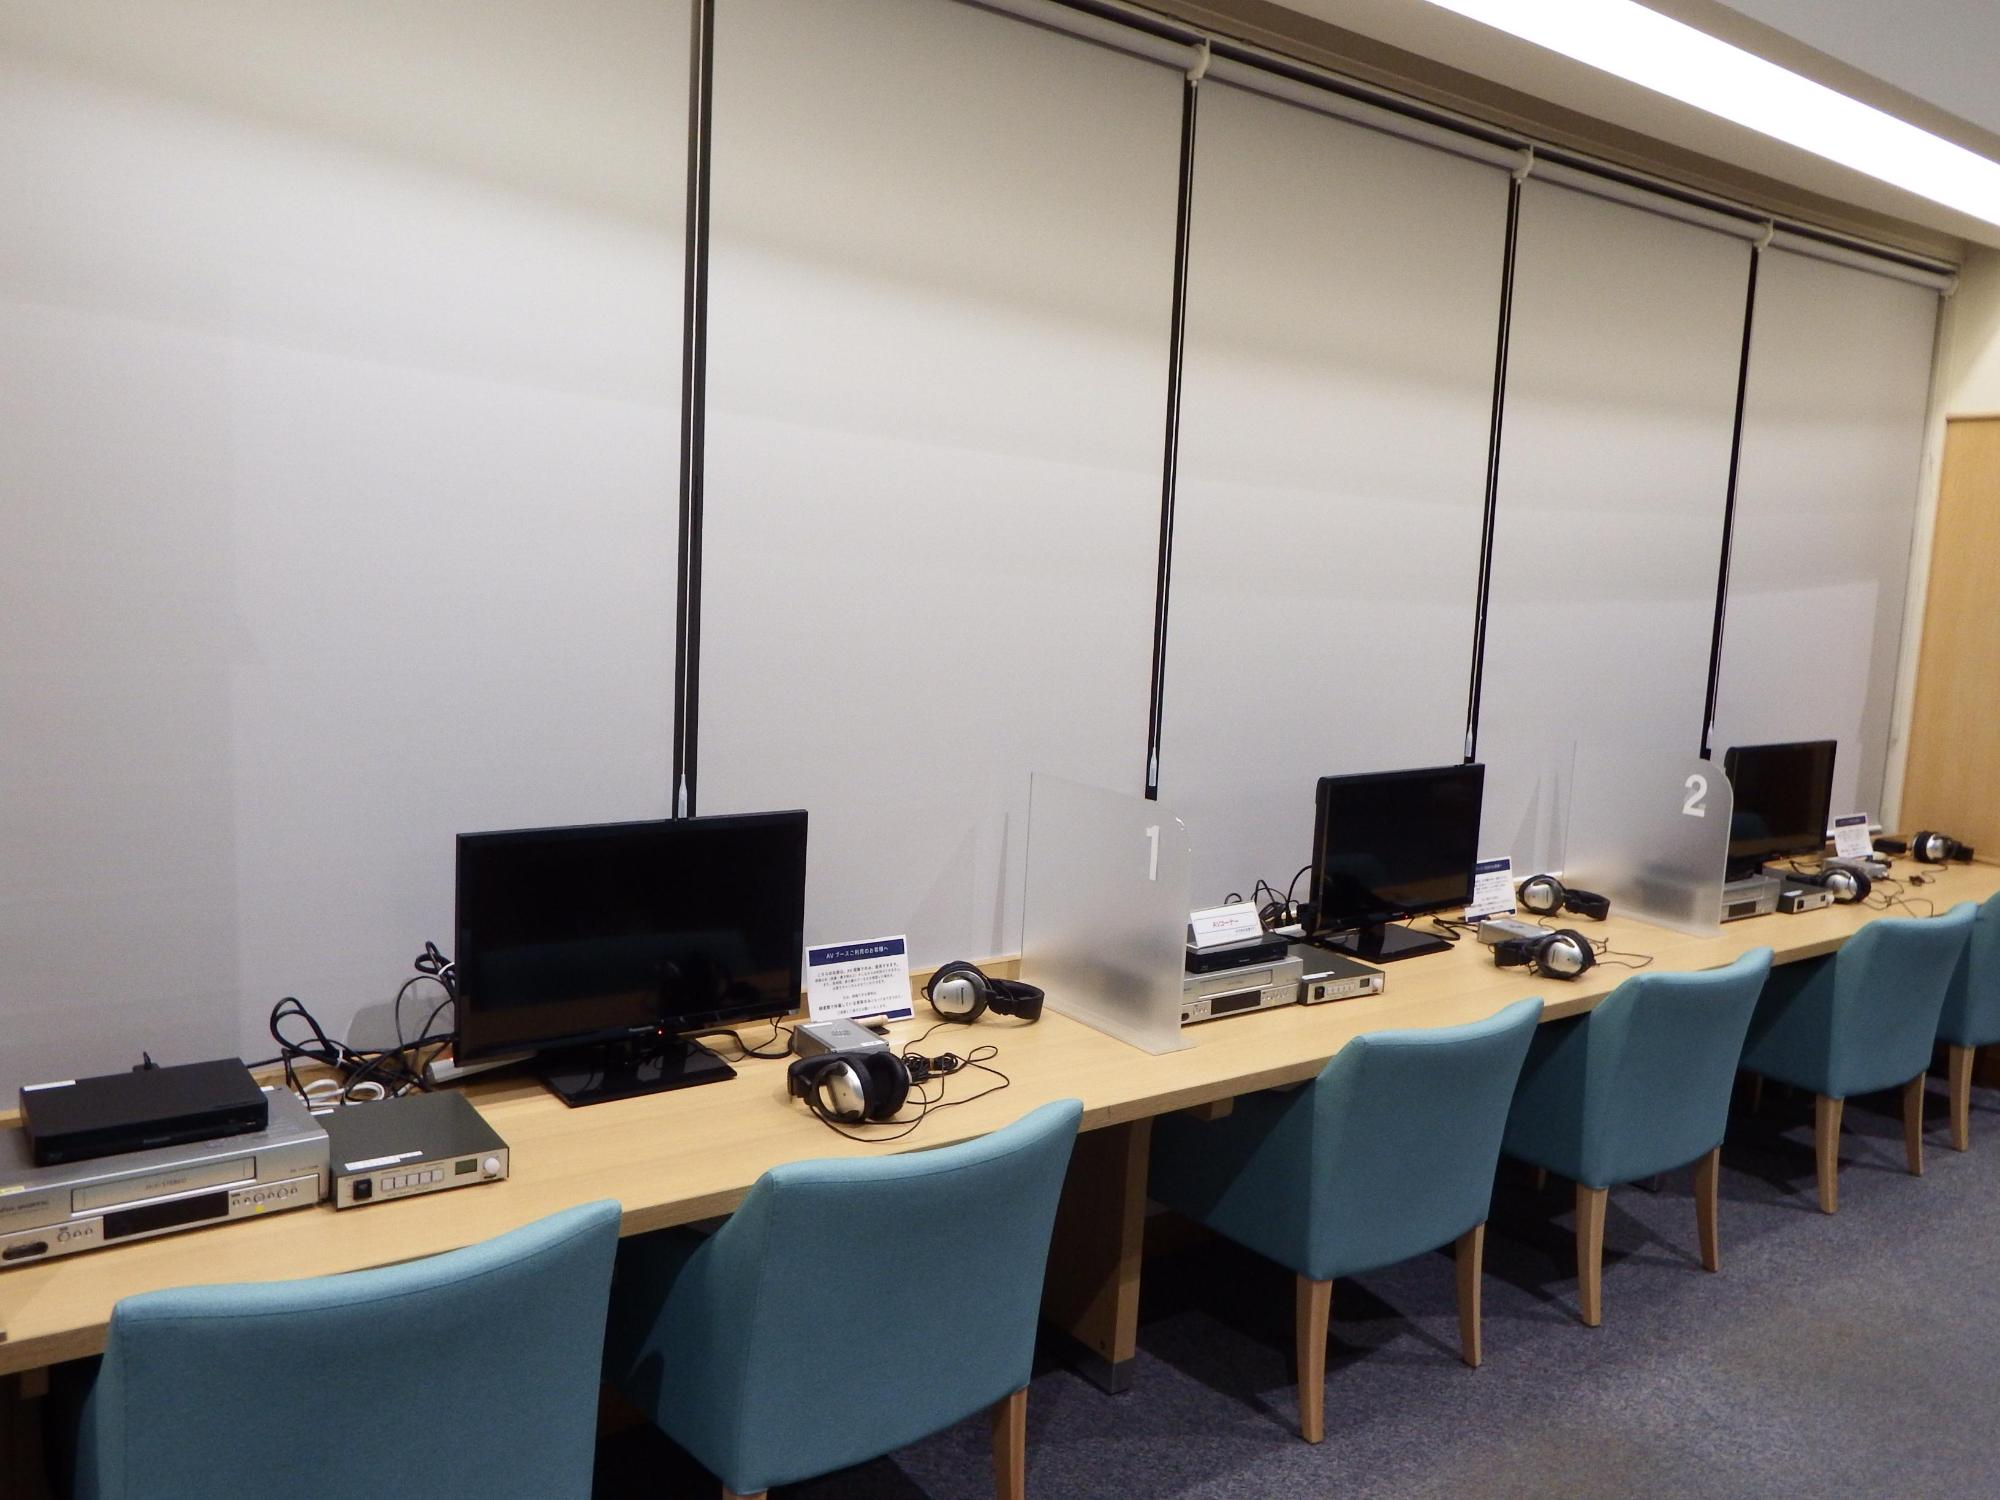 恵庭市立図書館のAV設備視聴用モニターが設置されている机の写真